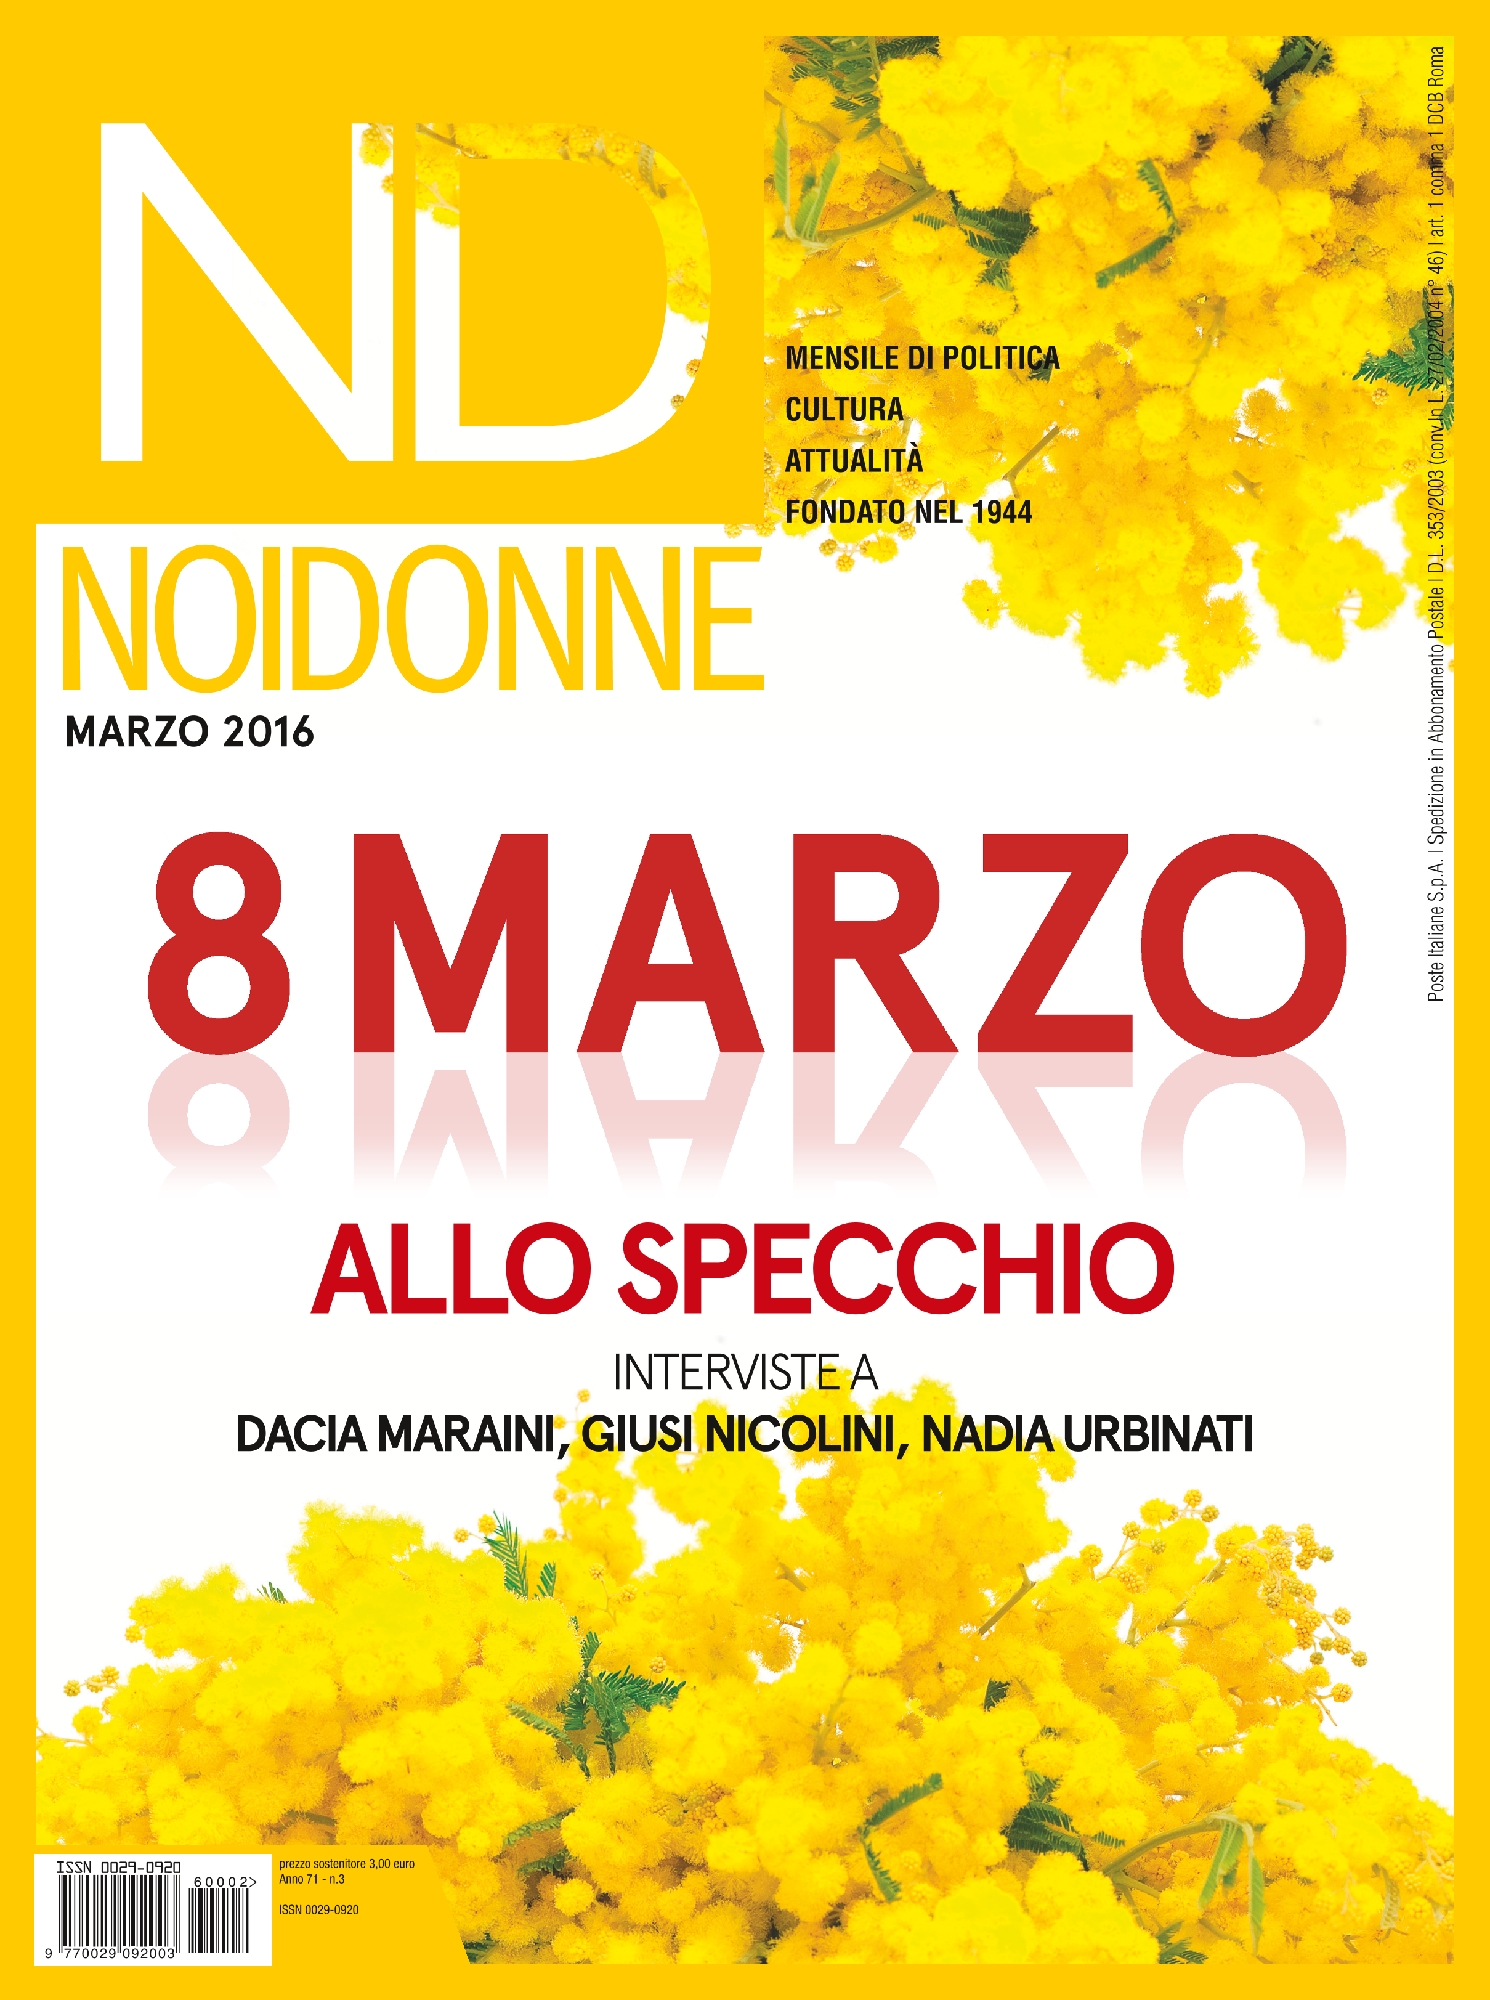 Foto: L'8 marzo allo specchio, interviste a Maraini, Nicolini, Urbinati